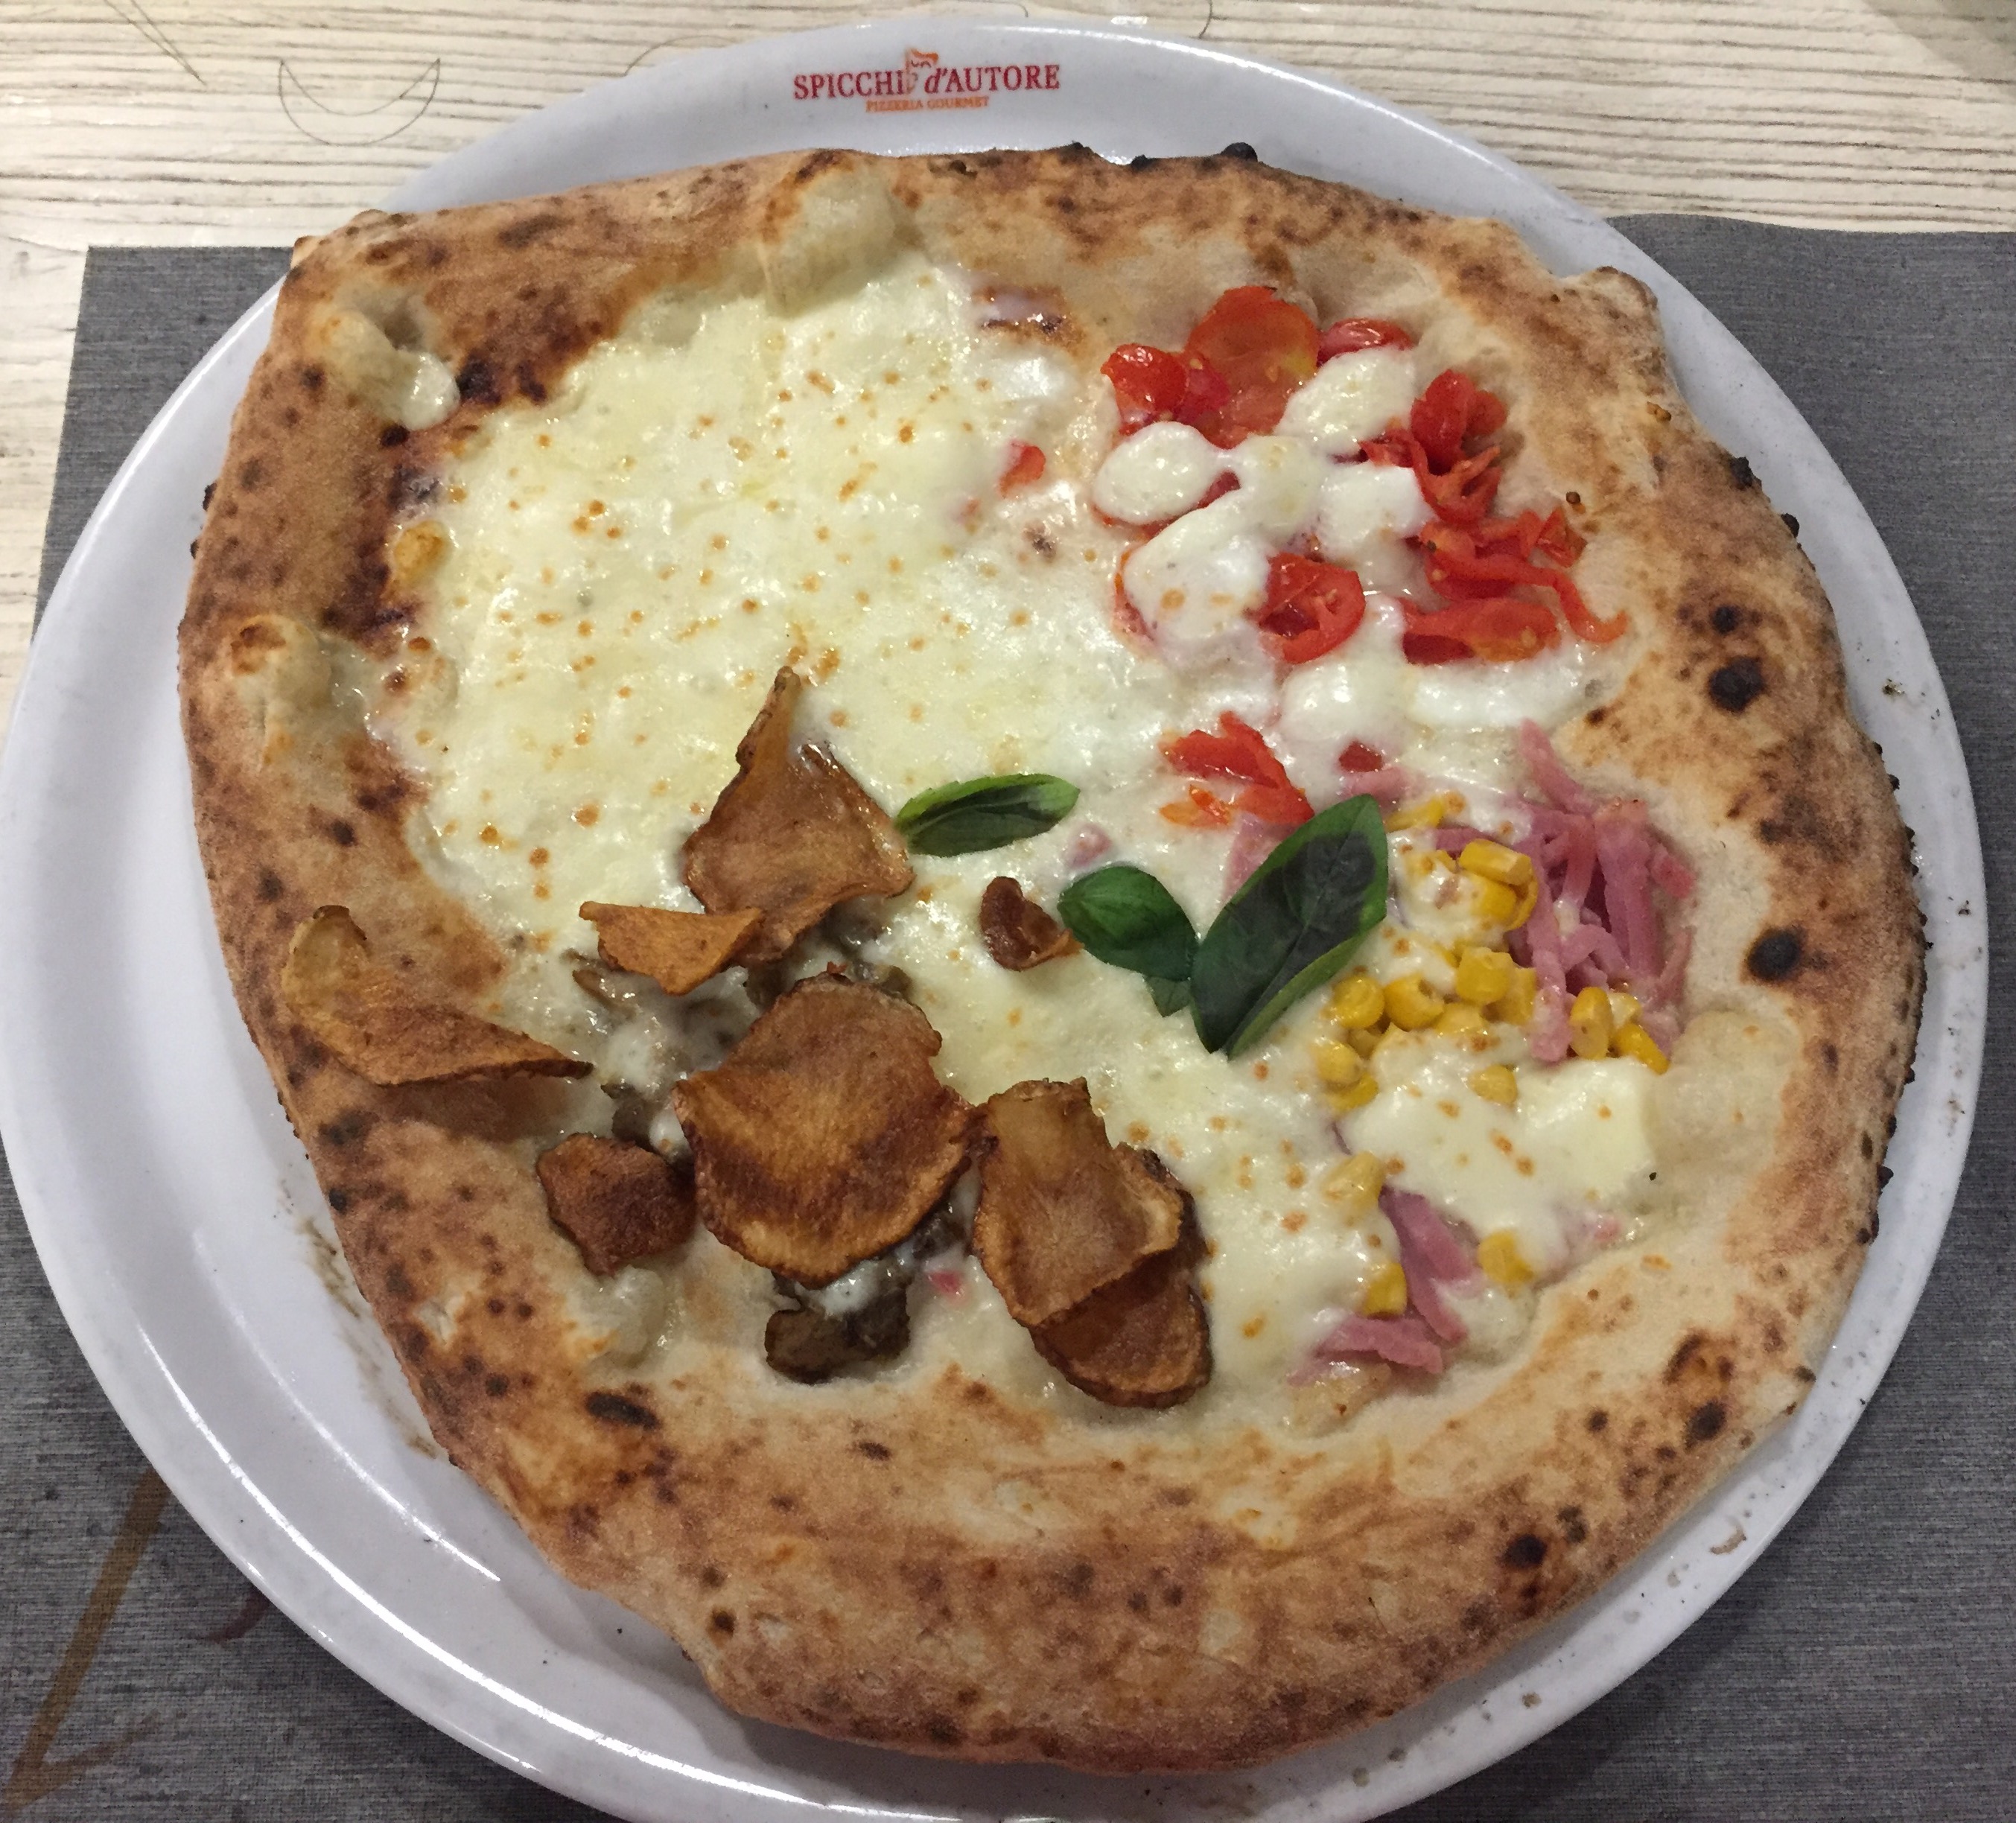 Pizzeria “Spicchi d’autore” al Vomero